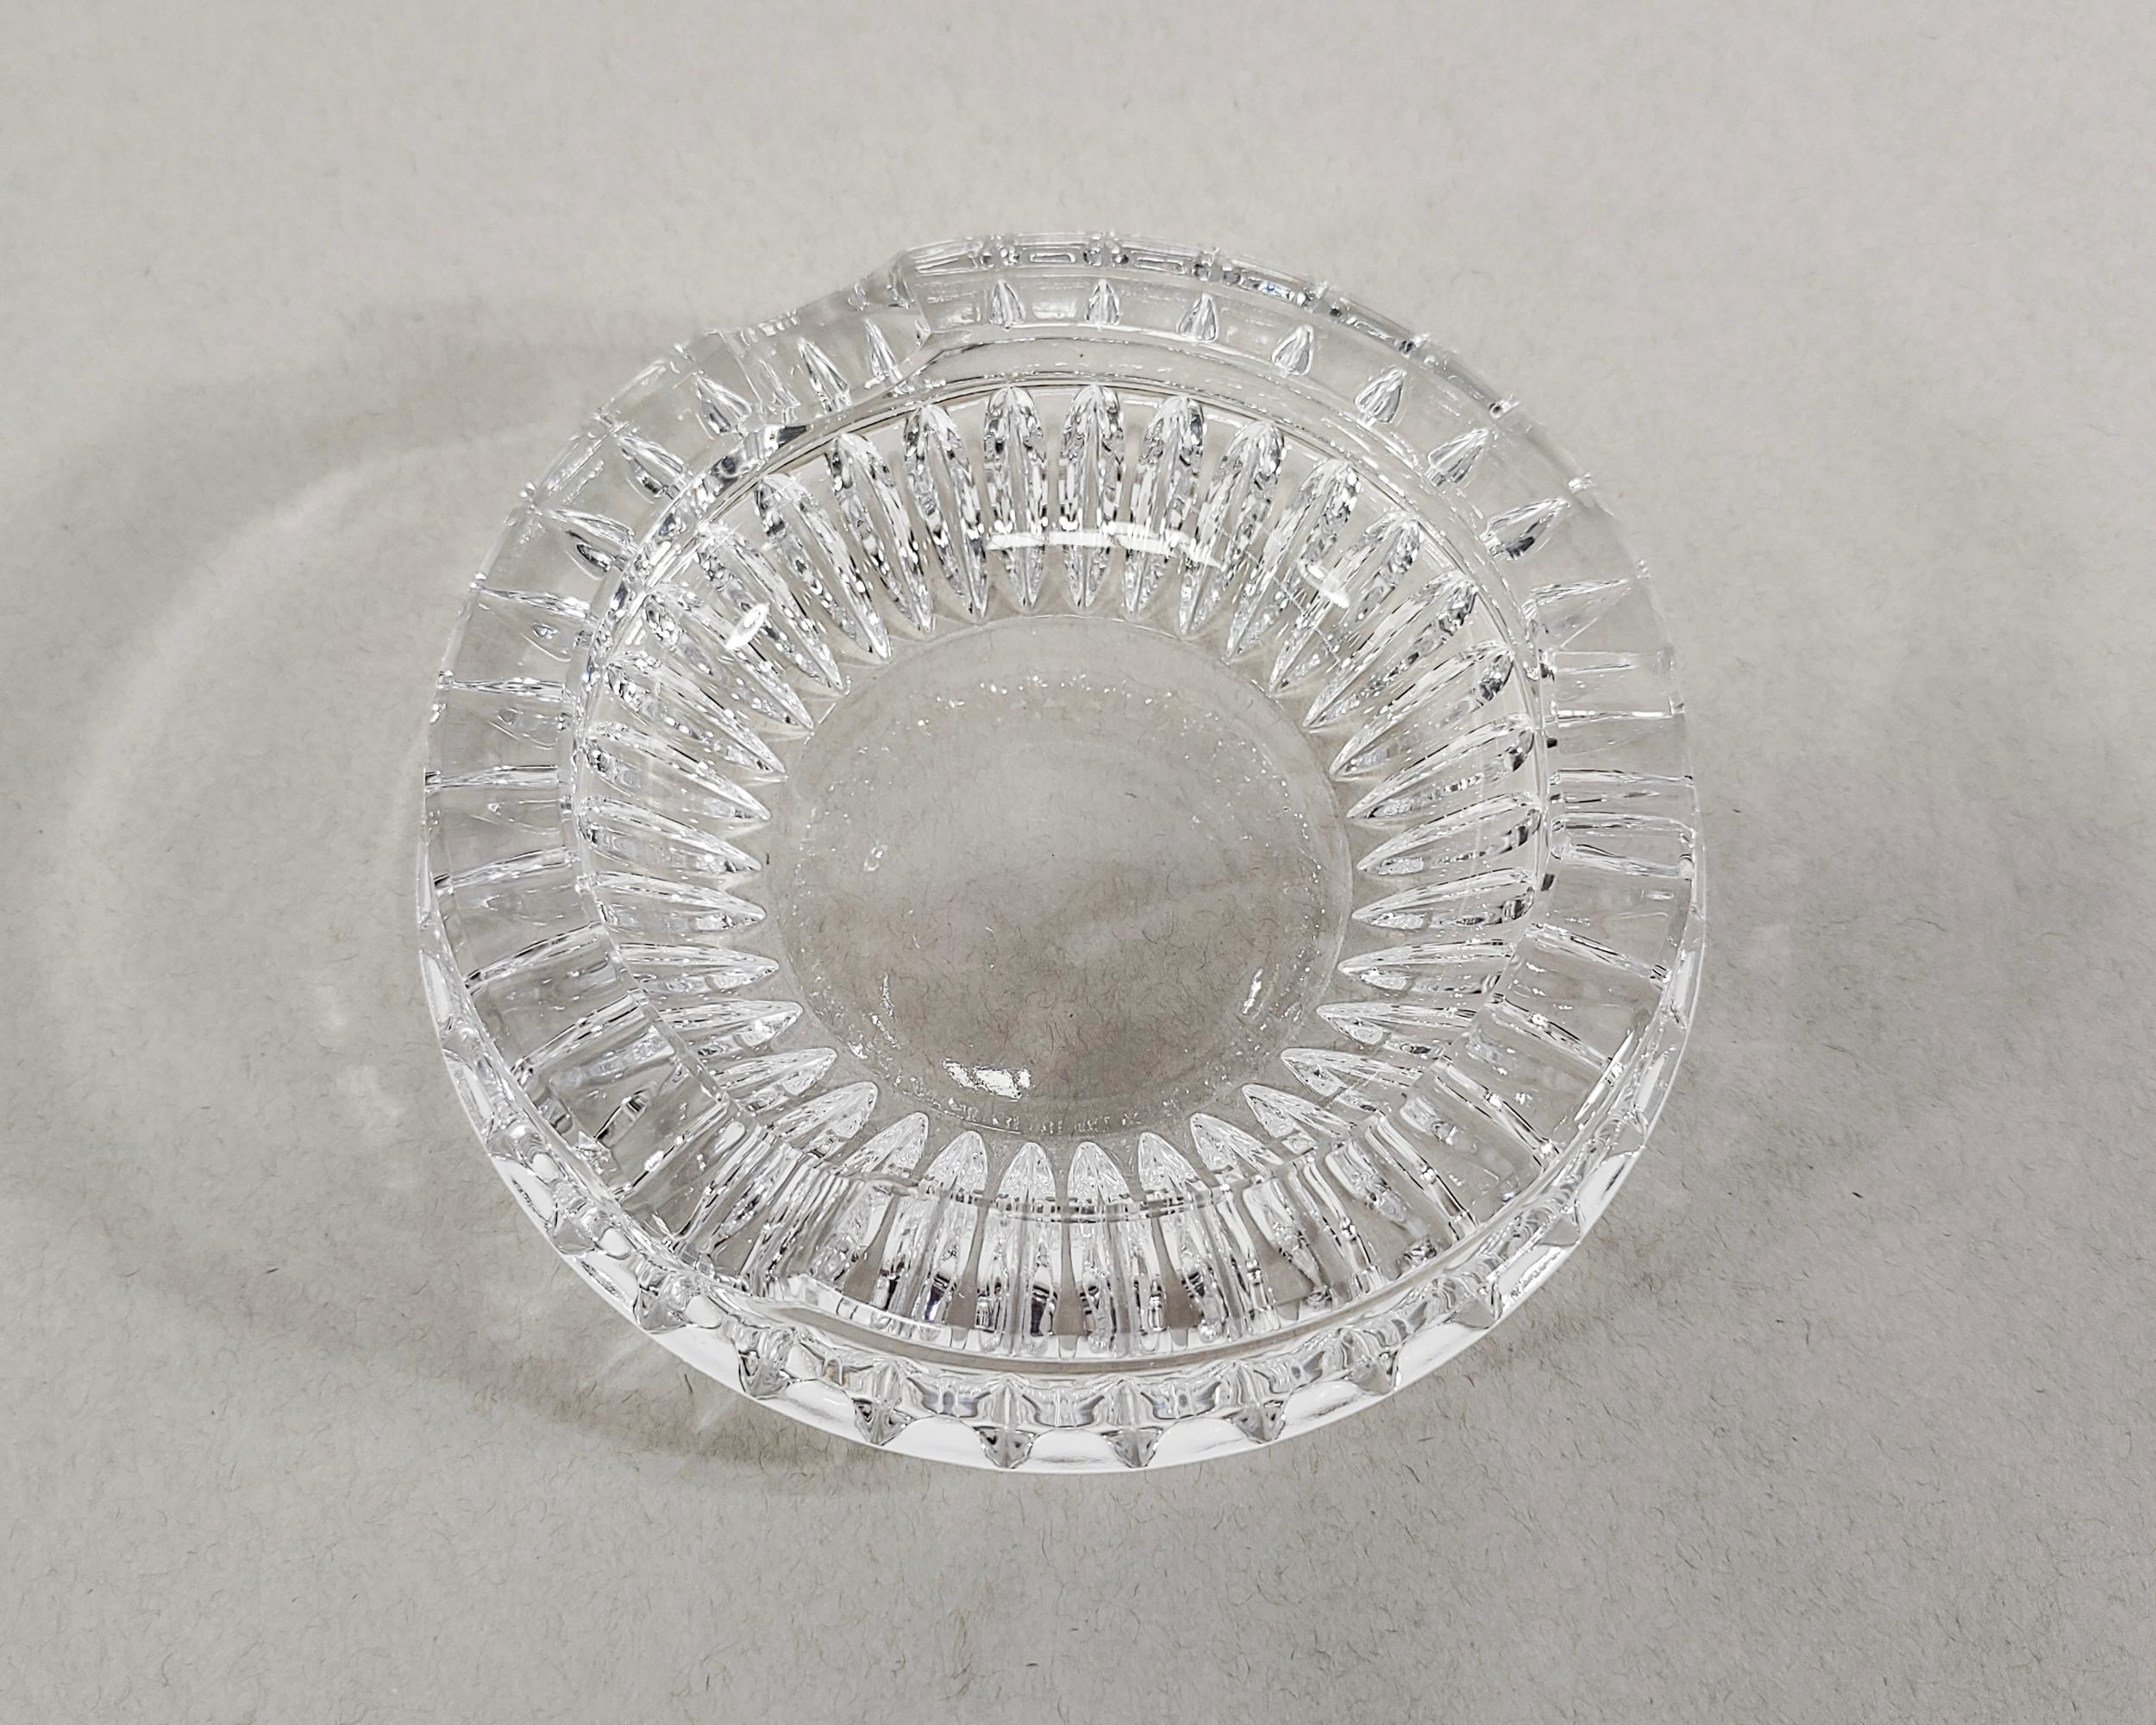 Runder Aschenbecher aus Kristall im Vintage-Stil mit schönem Facettenschliff am Boden. Insgesamt sehr guter Zustand, winzige, mit dem Auge nicht wahrnehmbare Chips, die nur durch Berührung zu erkennen sind. 

5.25